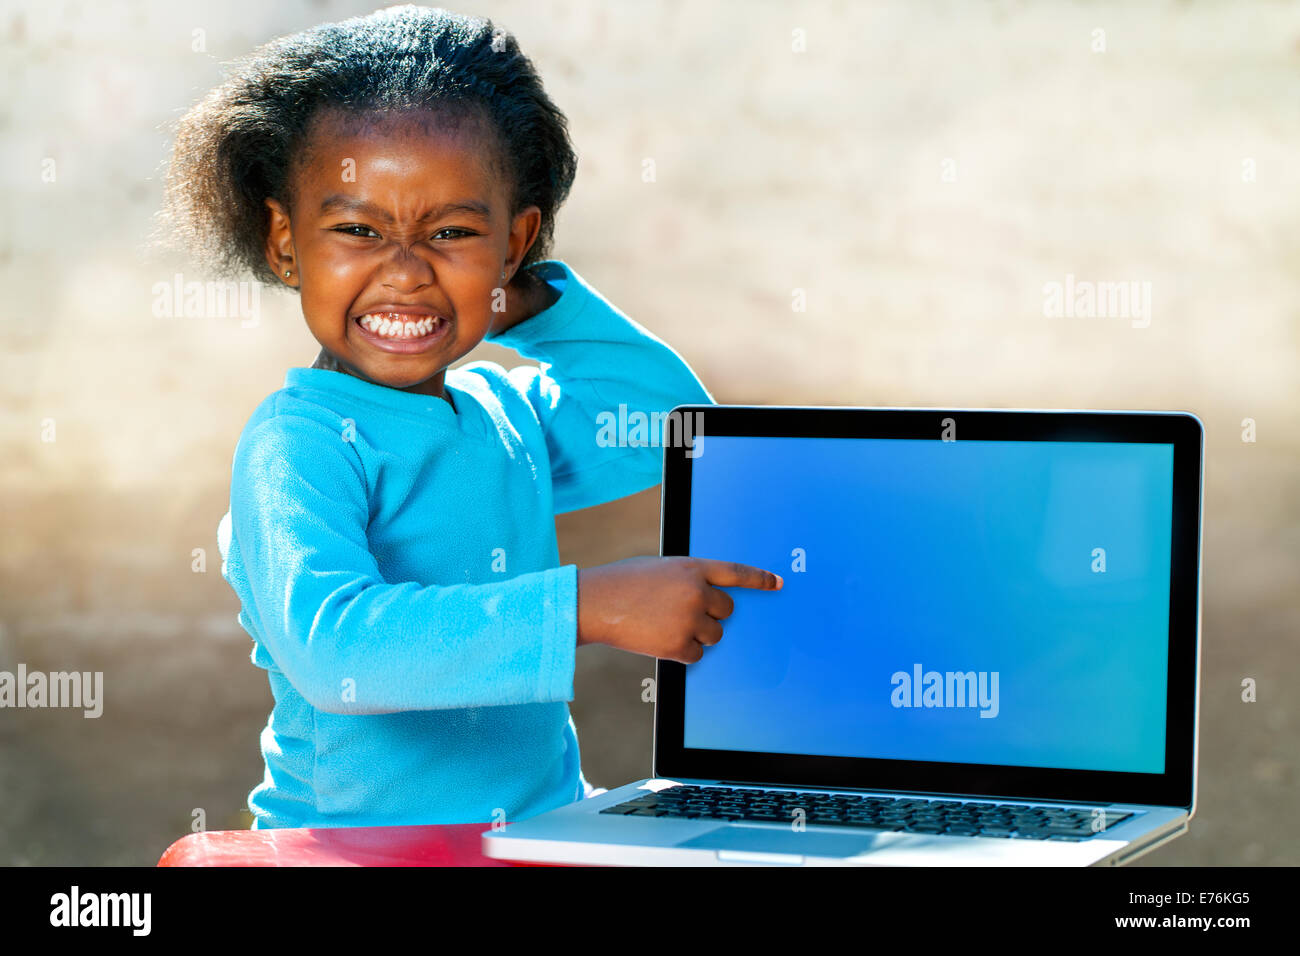 Porträt von afrikanischen Mädchen mit lustigen Gesichtsausdruck auf leeren Laptop-Bildschirm zeigen. Stockfoto